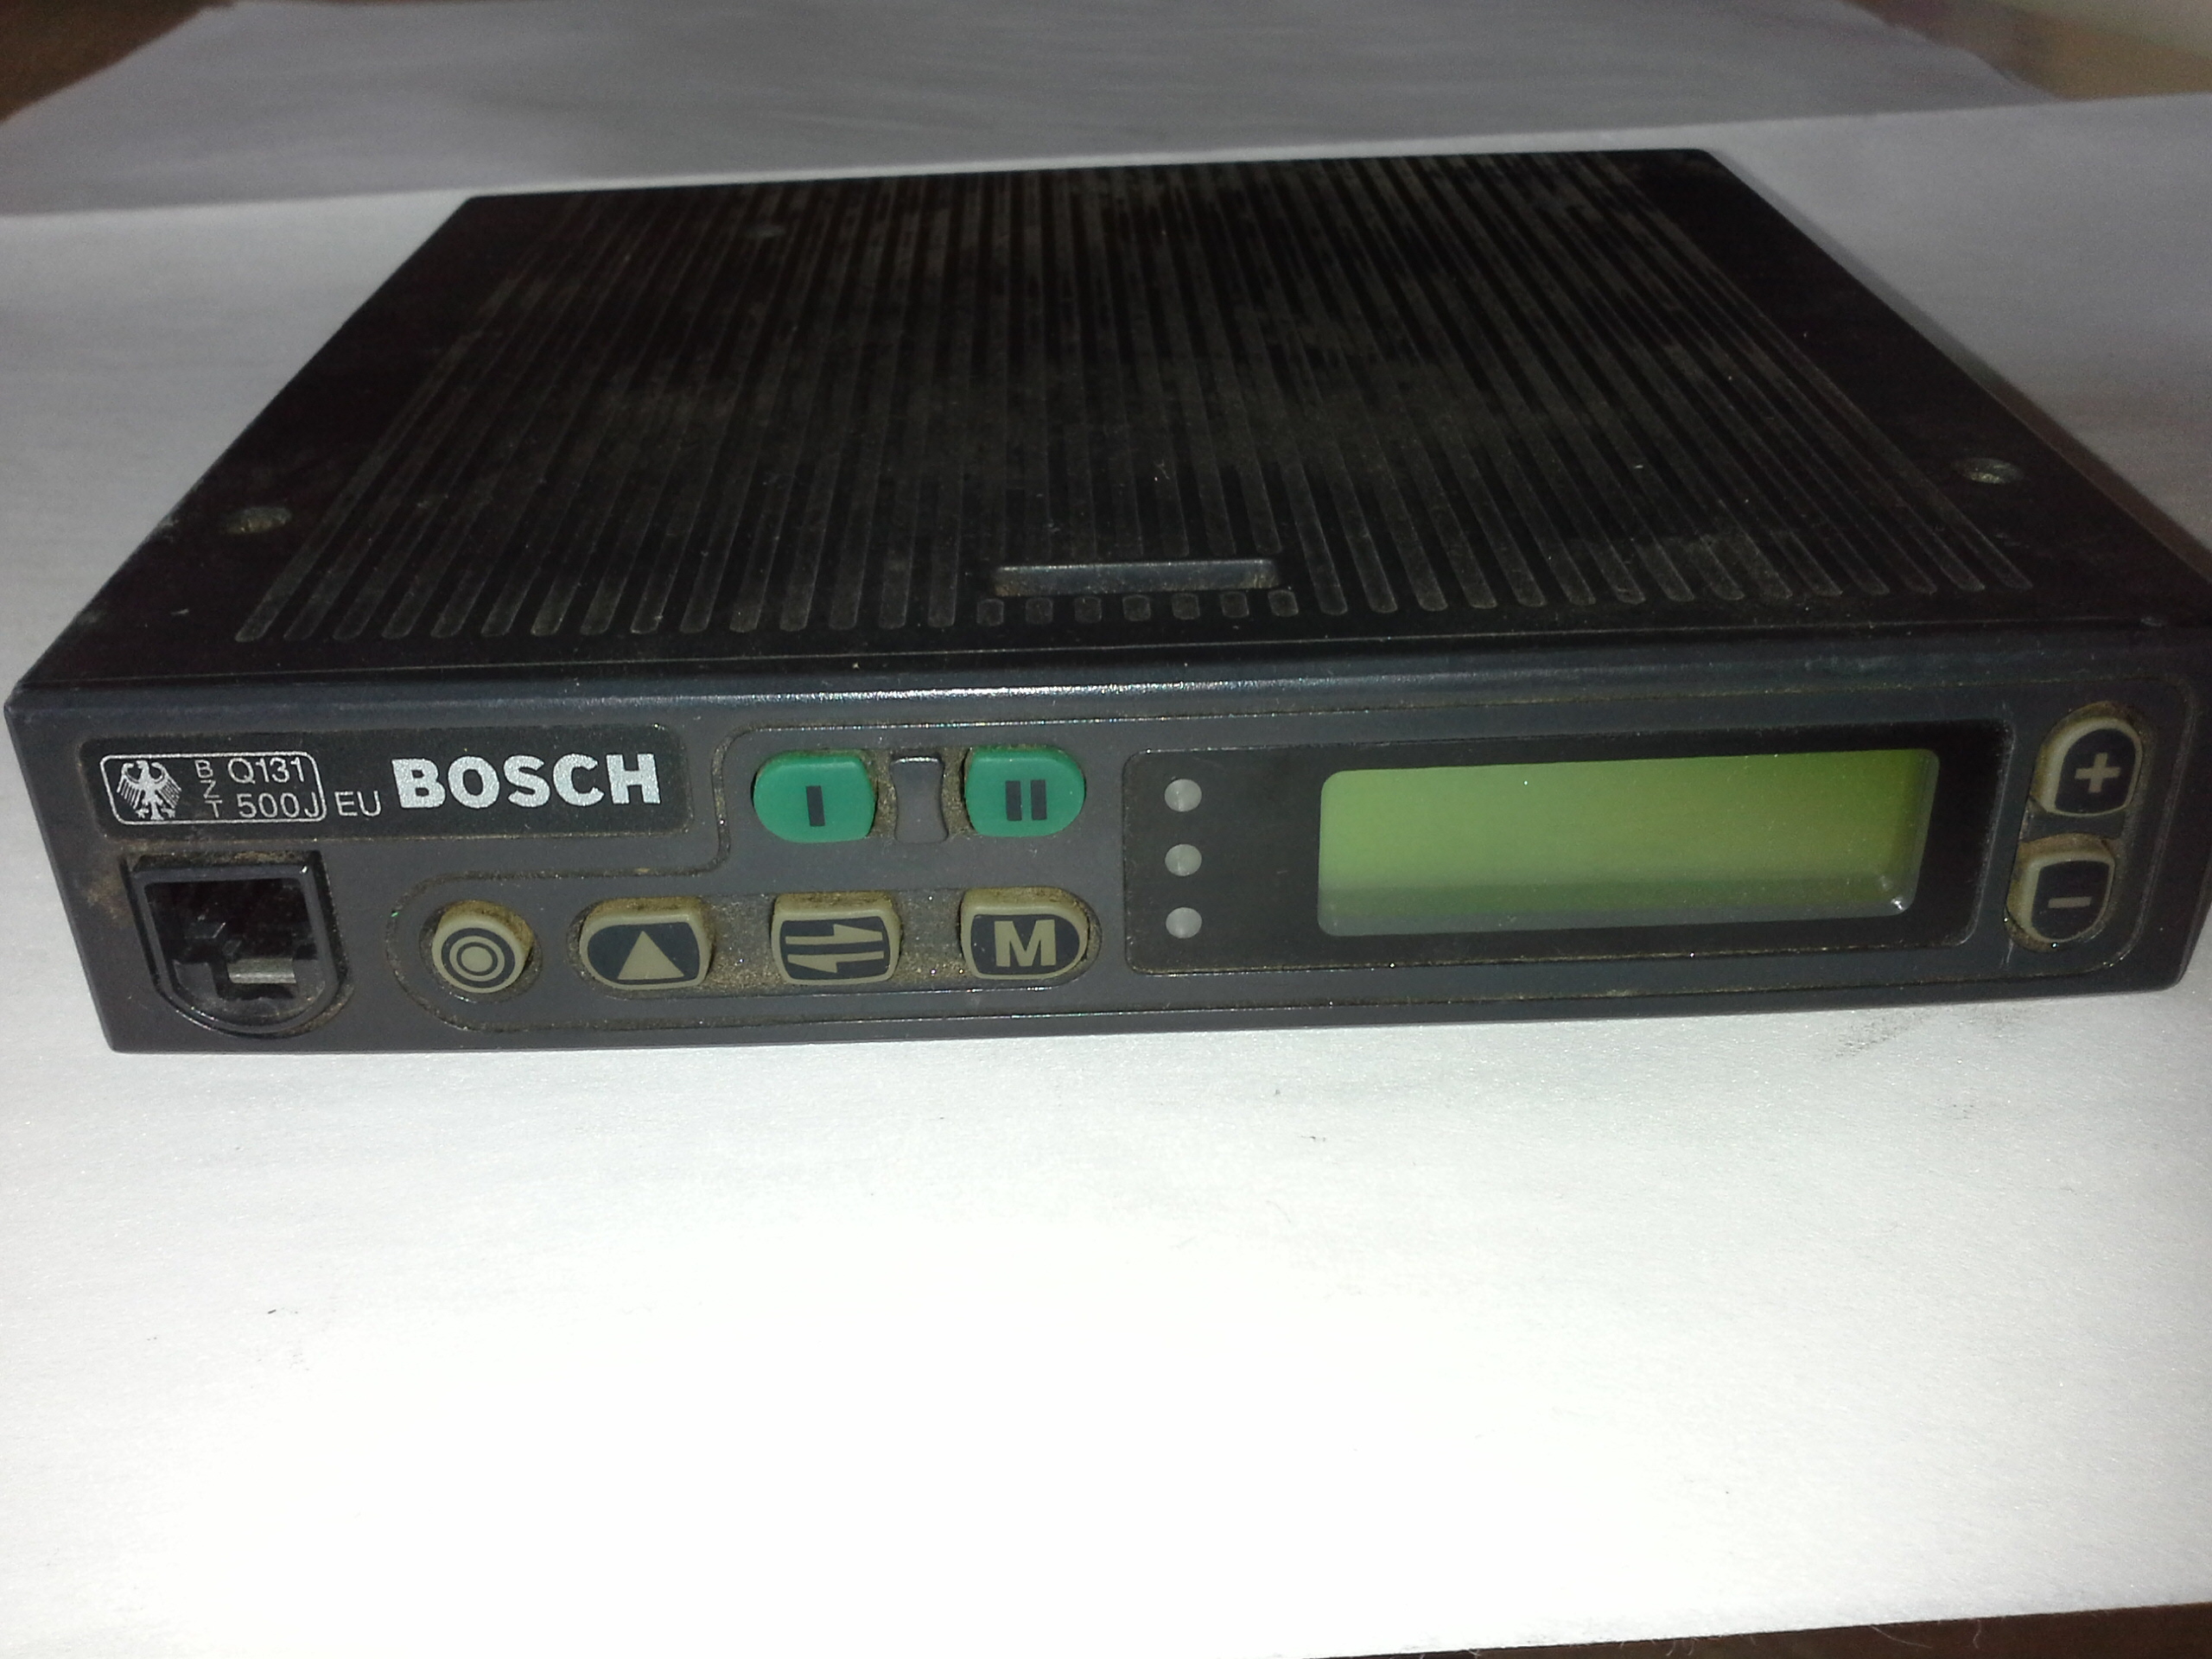 Funkgerät Bosch Q131-500J